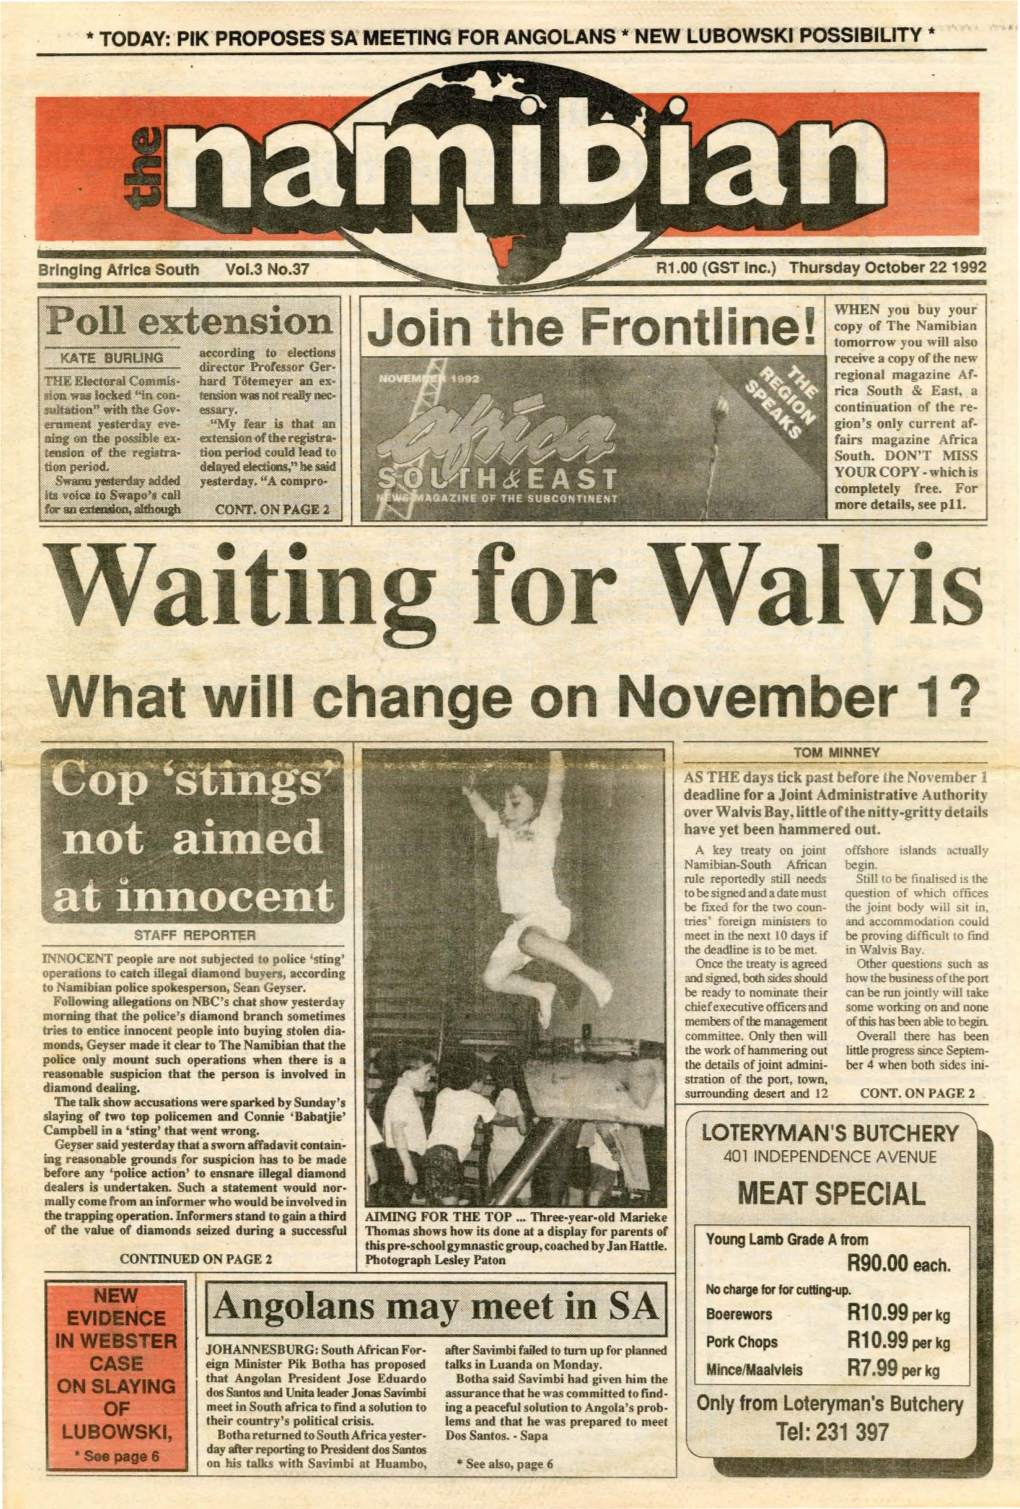 22 October 1992